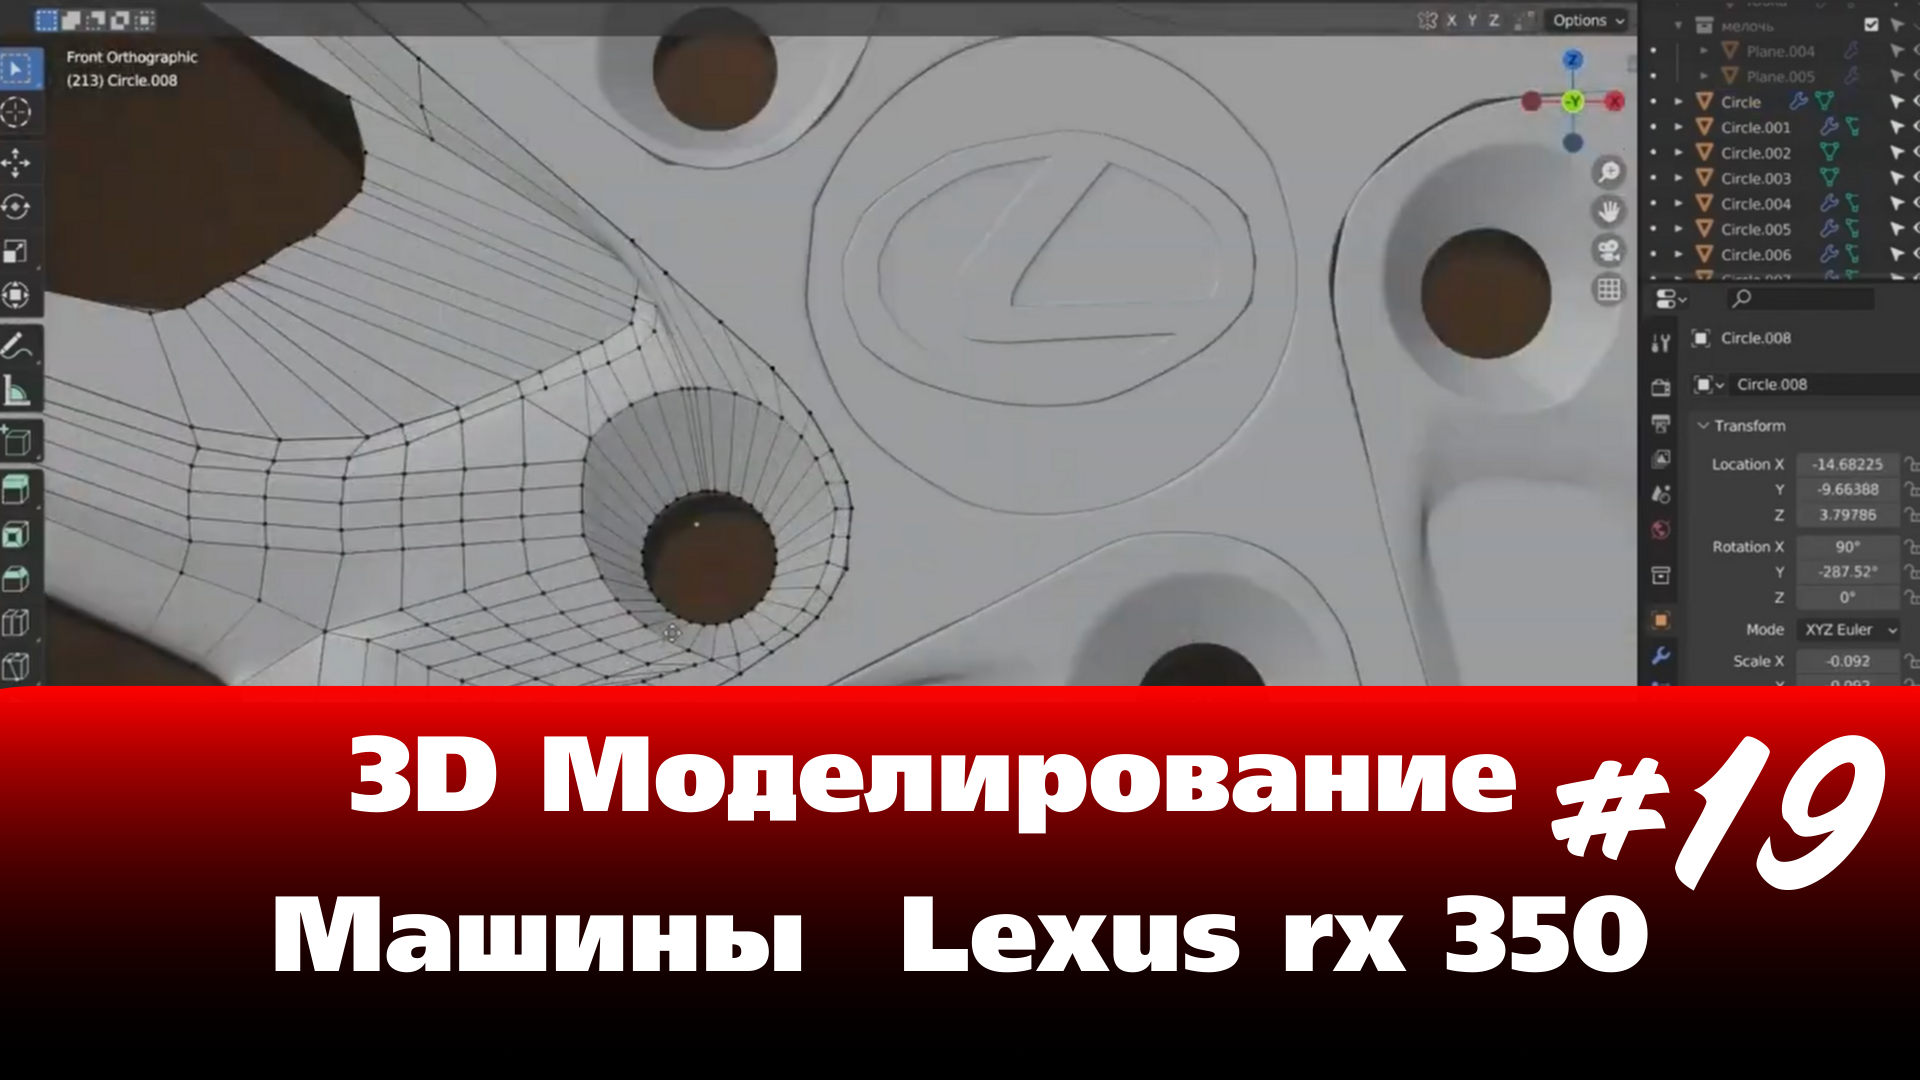 3D Моделирование Машины в Blender - Lexus rx 350 часть 19 #Blender